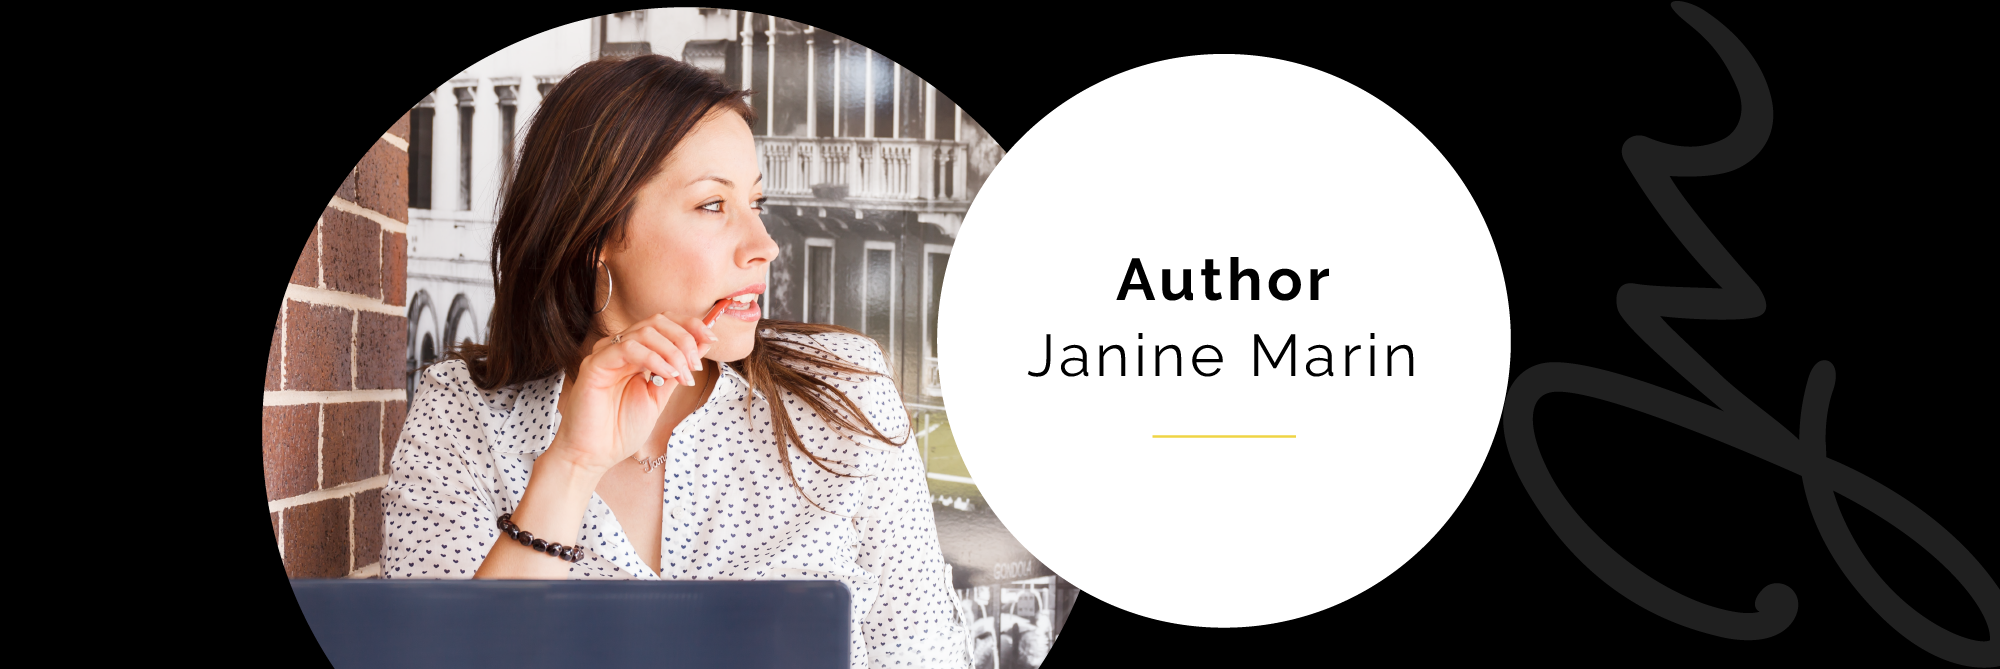 janine-marin-communications-author